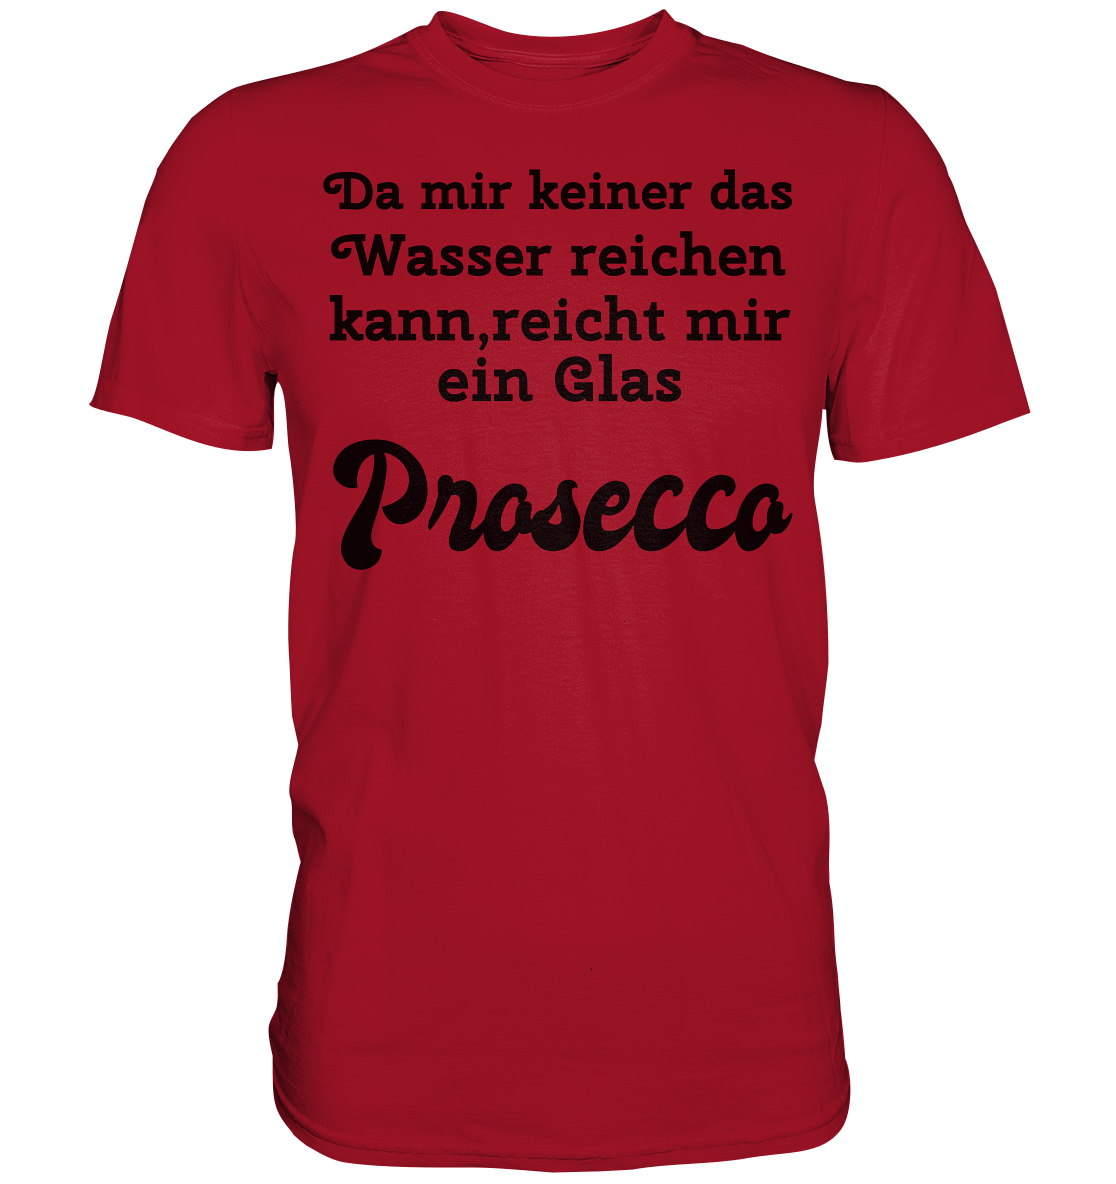 Da mir keiner das Wasser reichen kann, reicht mir ein Glas Prosecco -Designe Munich Palms  - Classic Shirt